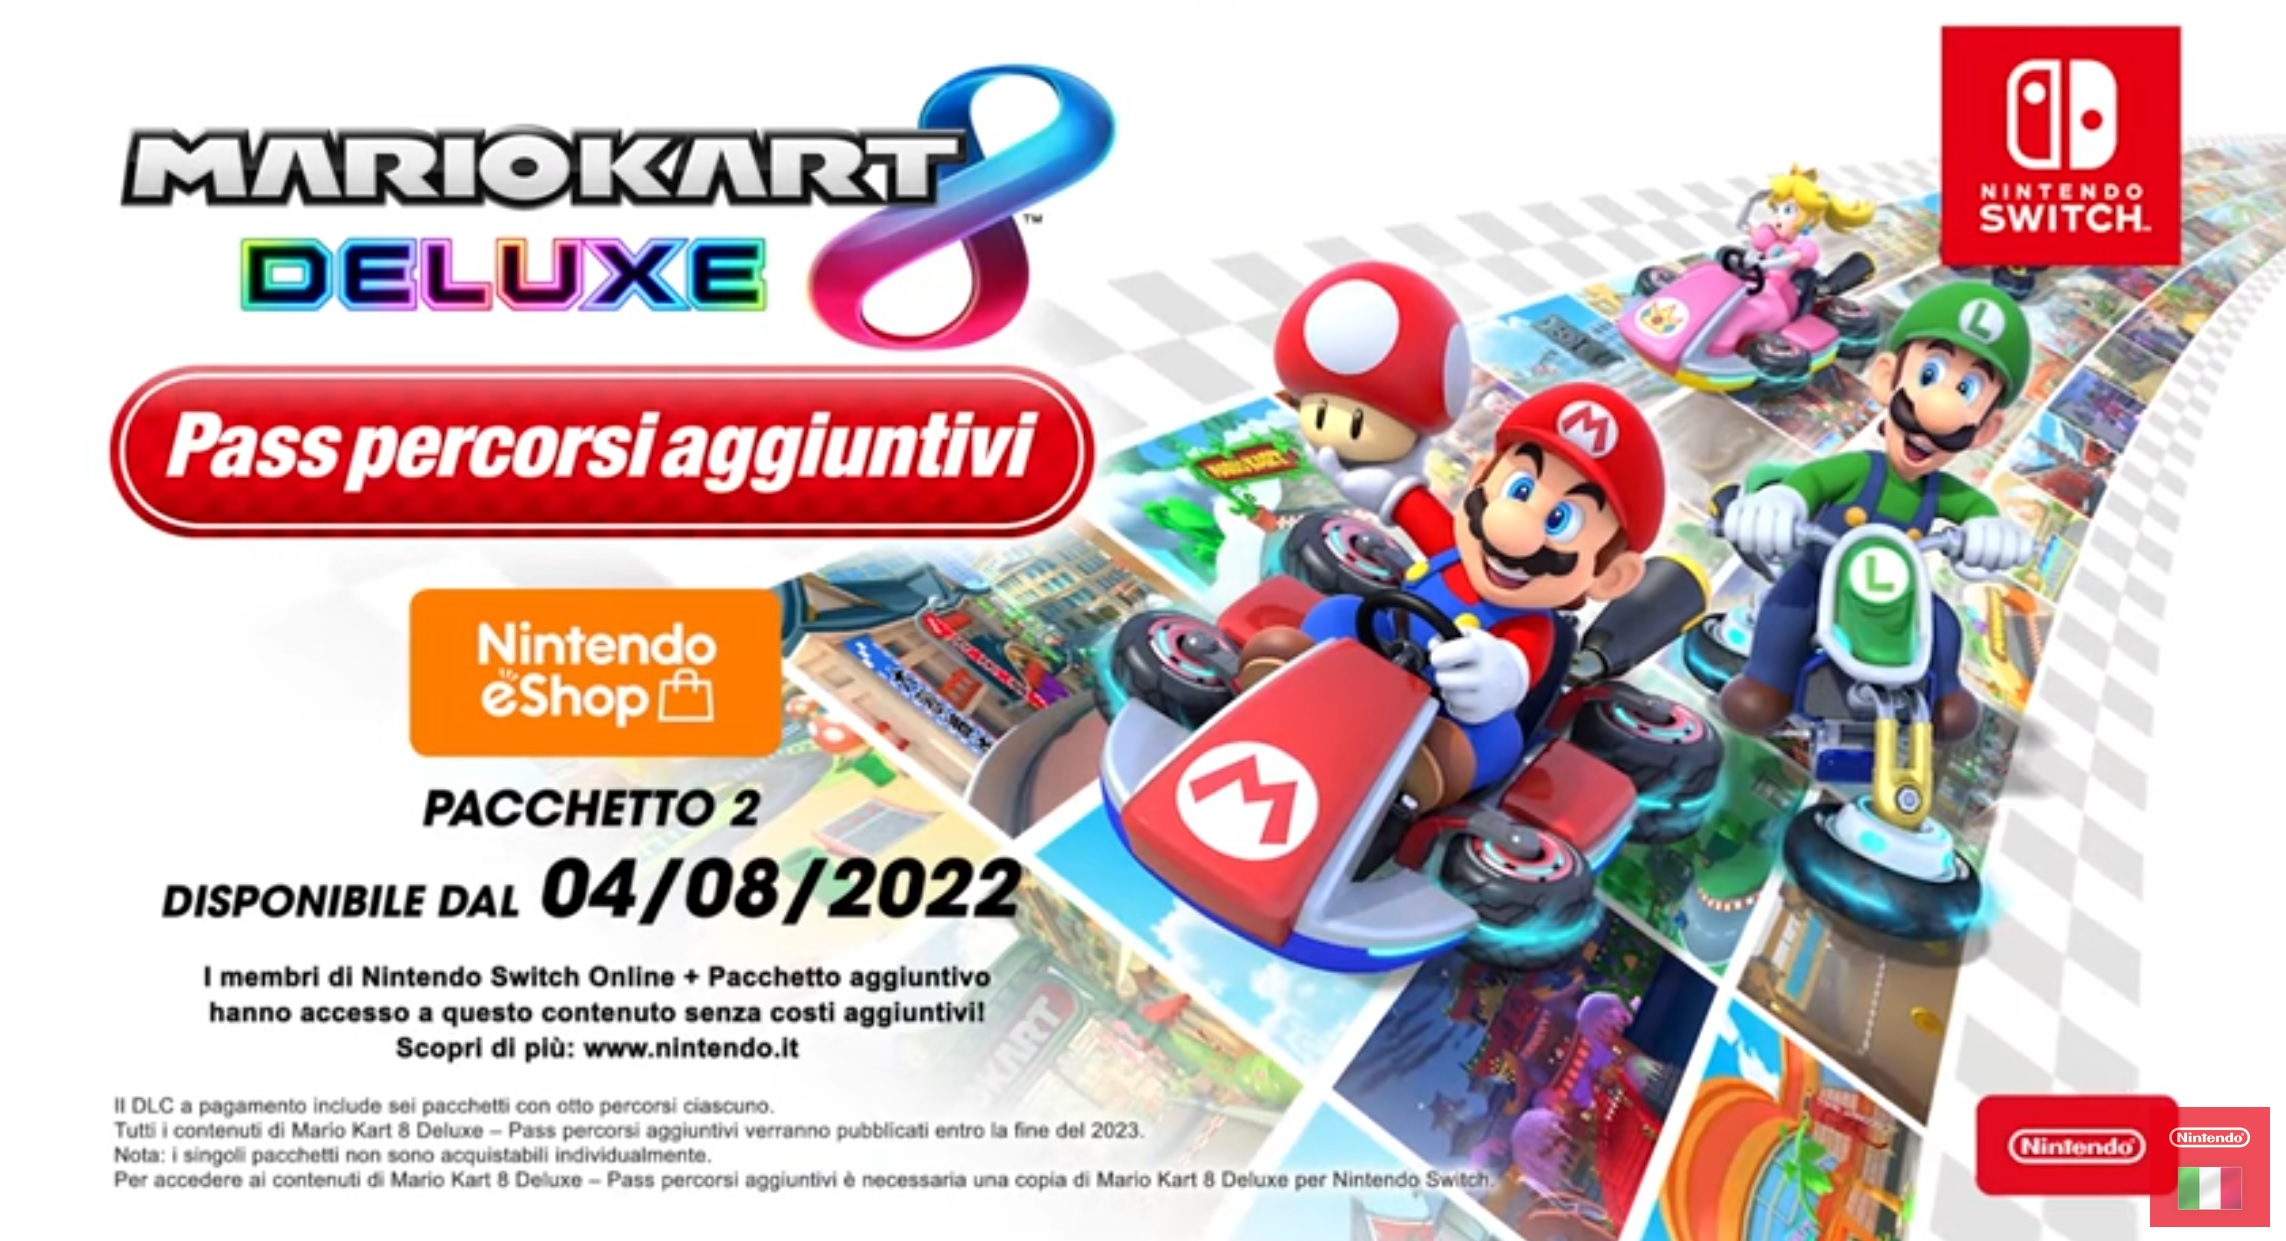 Mario Mart 8 Deluxe - Pass Percorsi Aggiuntivi: Pacchetto 2